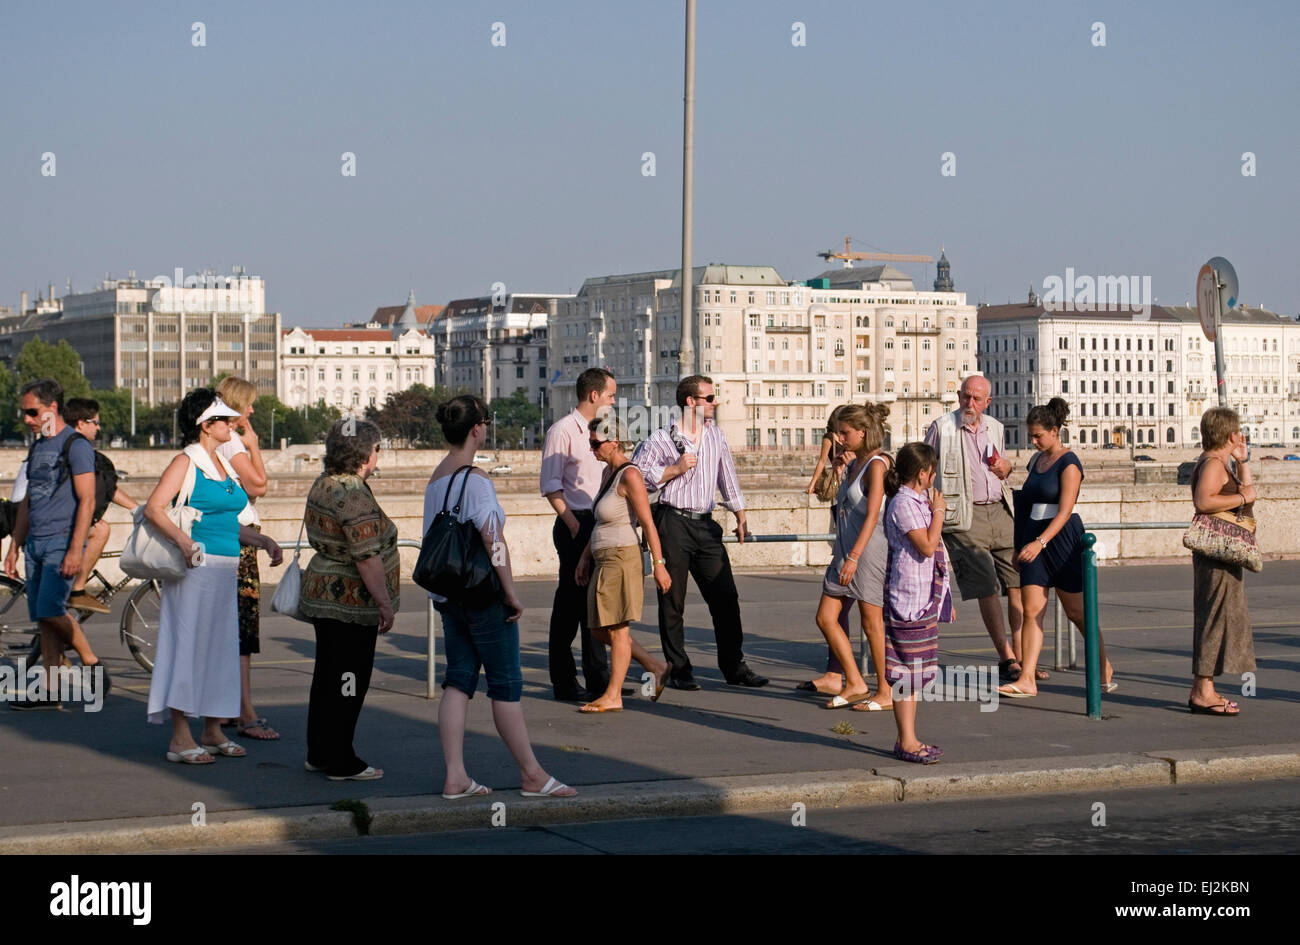 Gente esperando en la parada del autobús, Budapest, Hungría Foto de stock